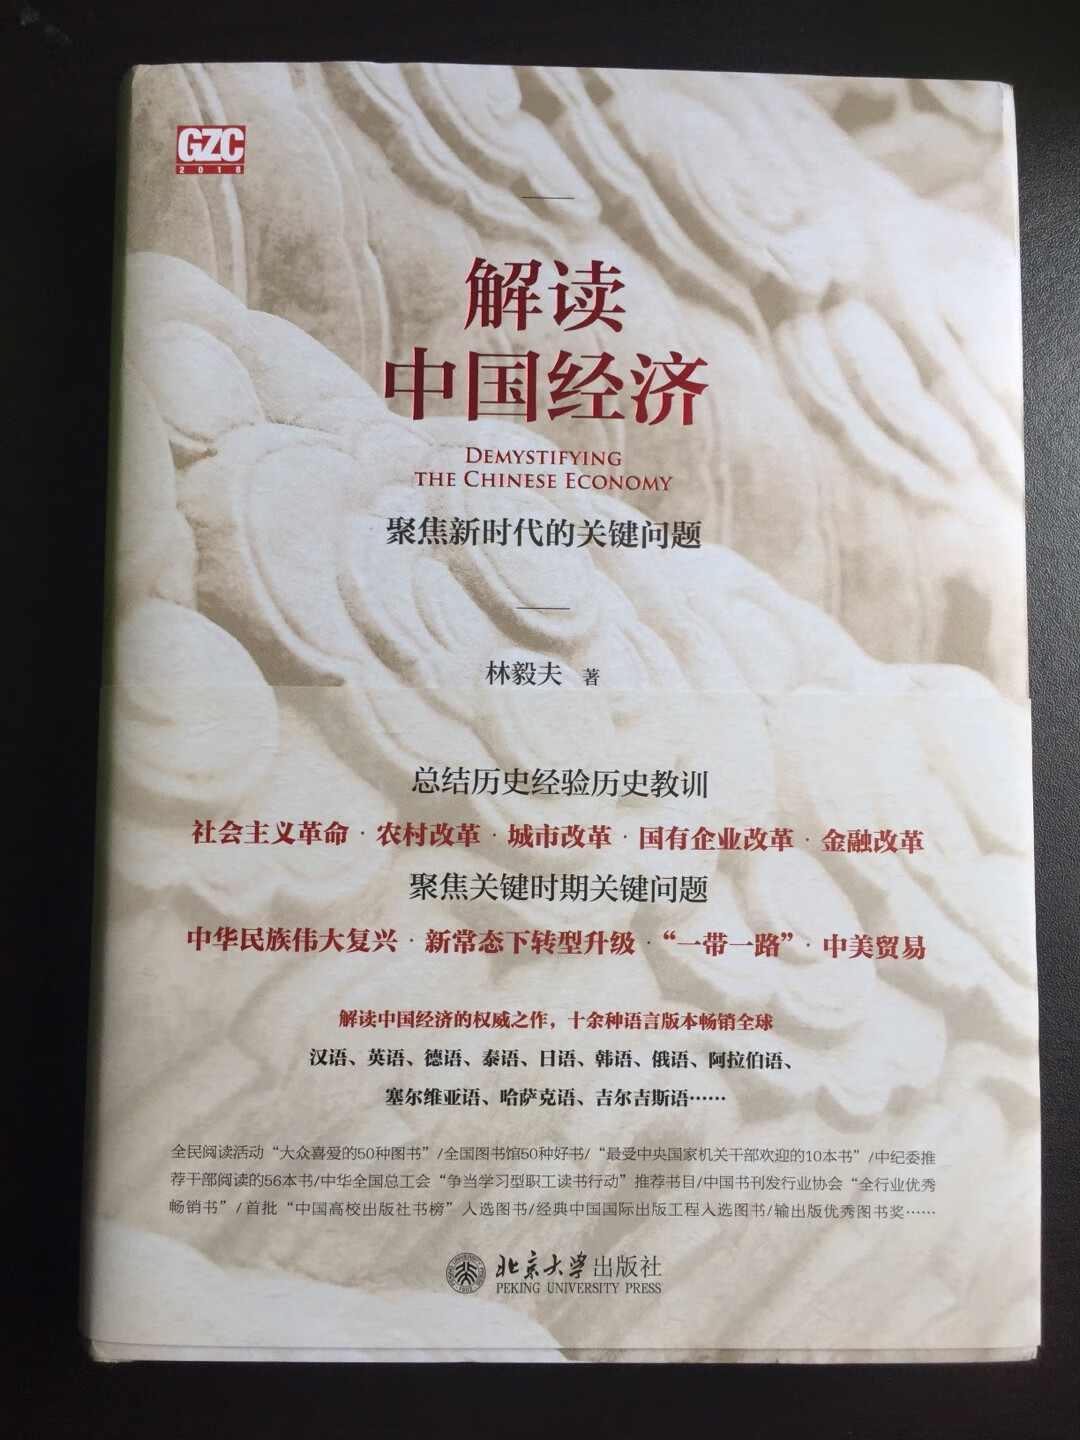 这本书很有价值，是我导师推荐的必读书籍之一。这本书从几个方面介绍了中国的经济情况，作者根据自己的研究提出了一个答案关于李约瑟之问的，并结合历史经验对中国的经济增长作出了预判，中国的市场经济还大有可为，中国的未来可期！